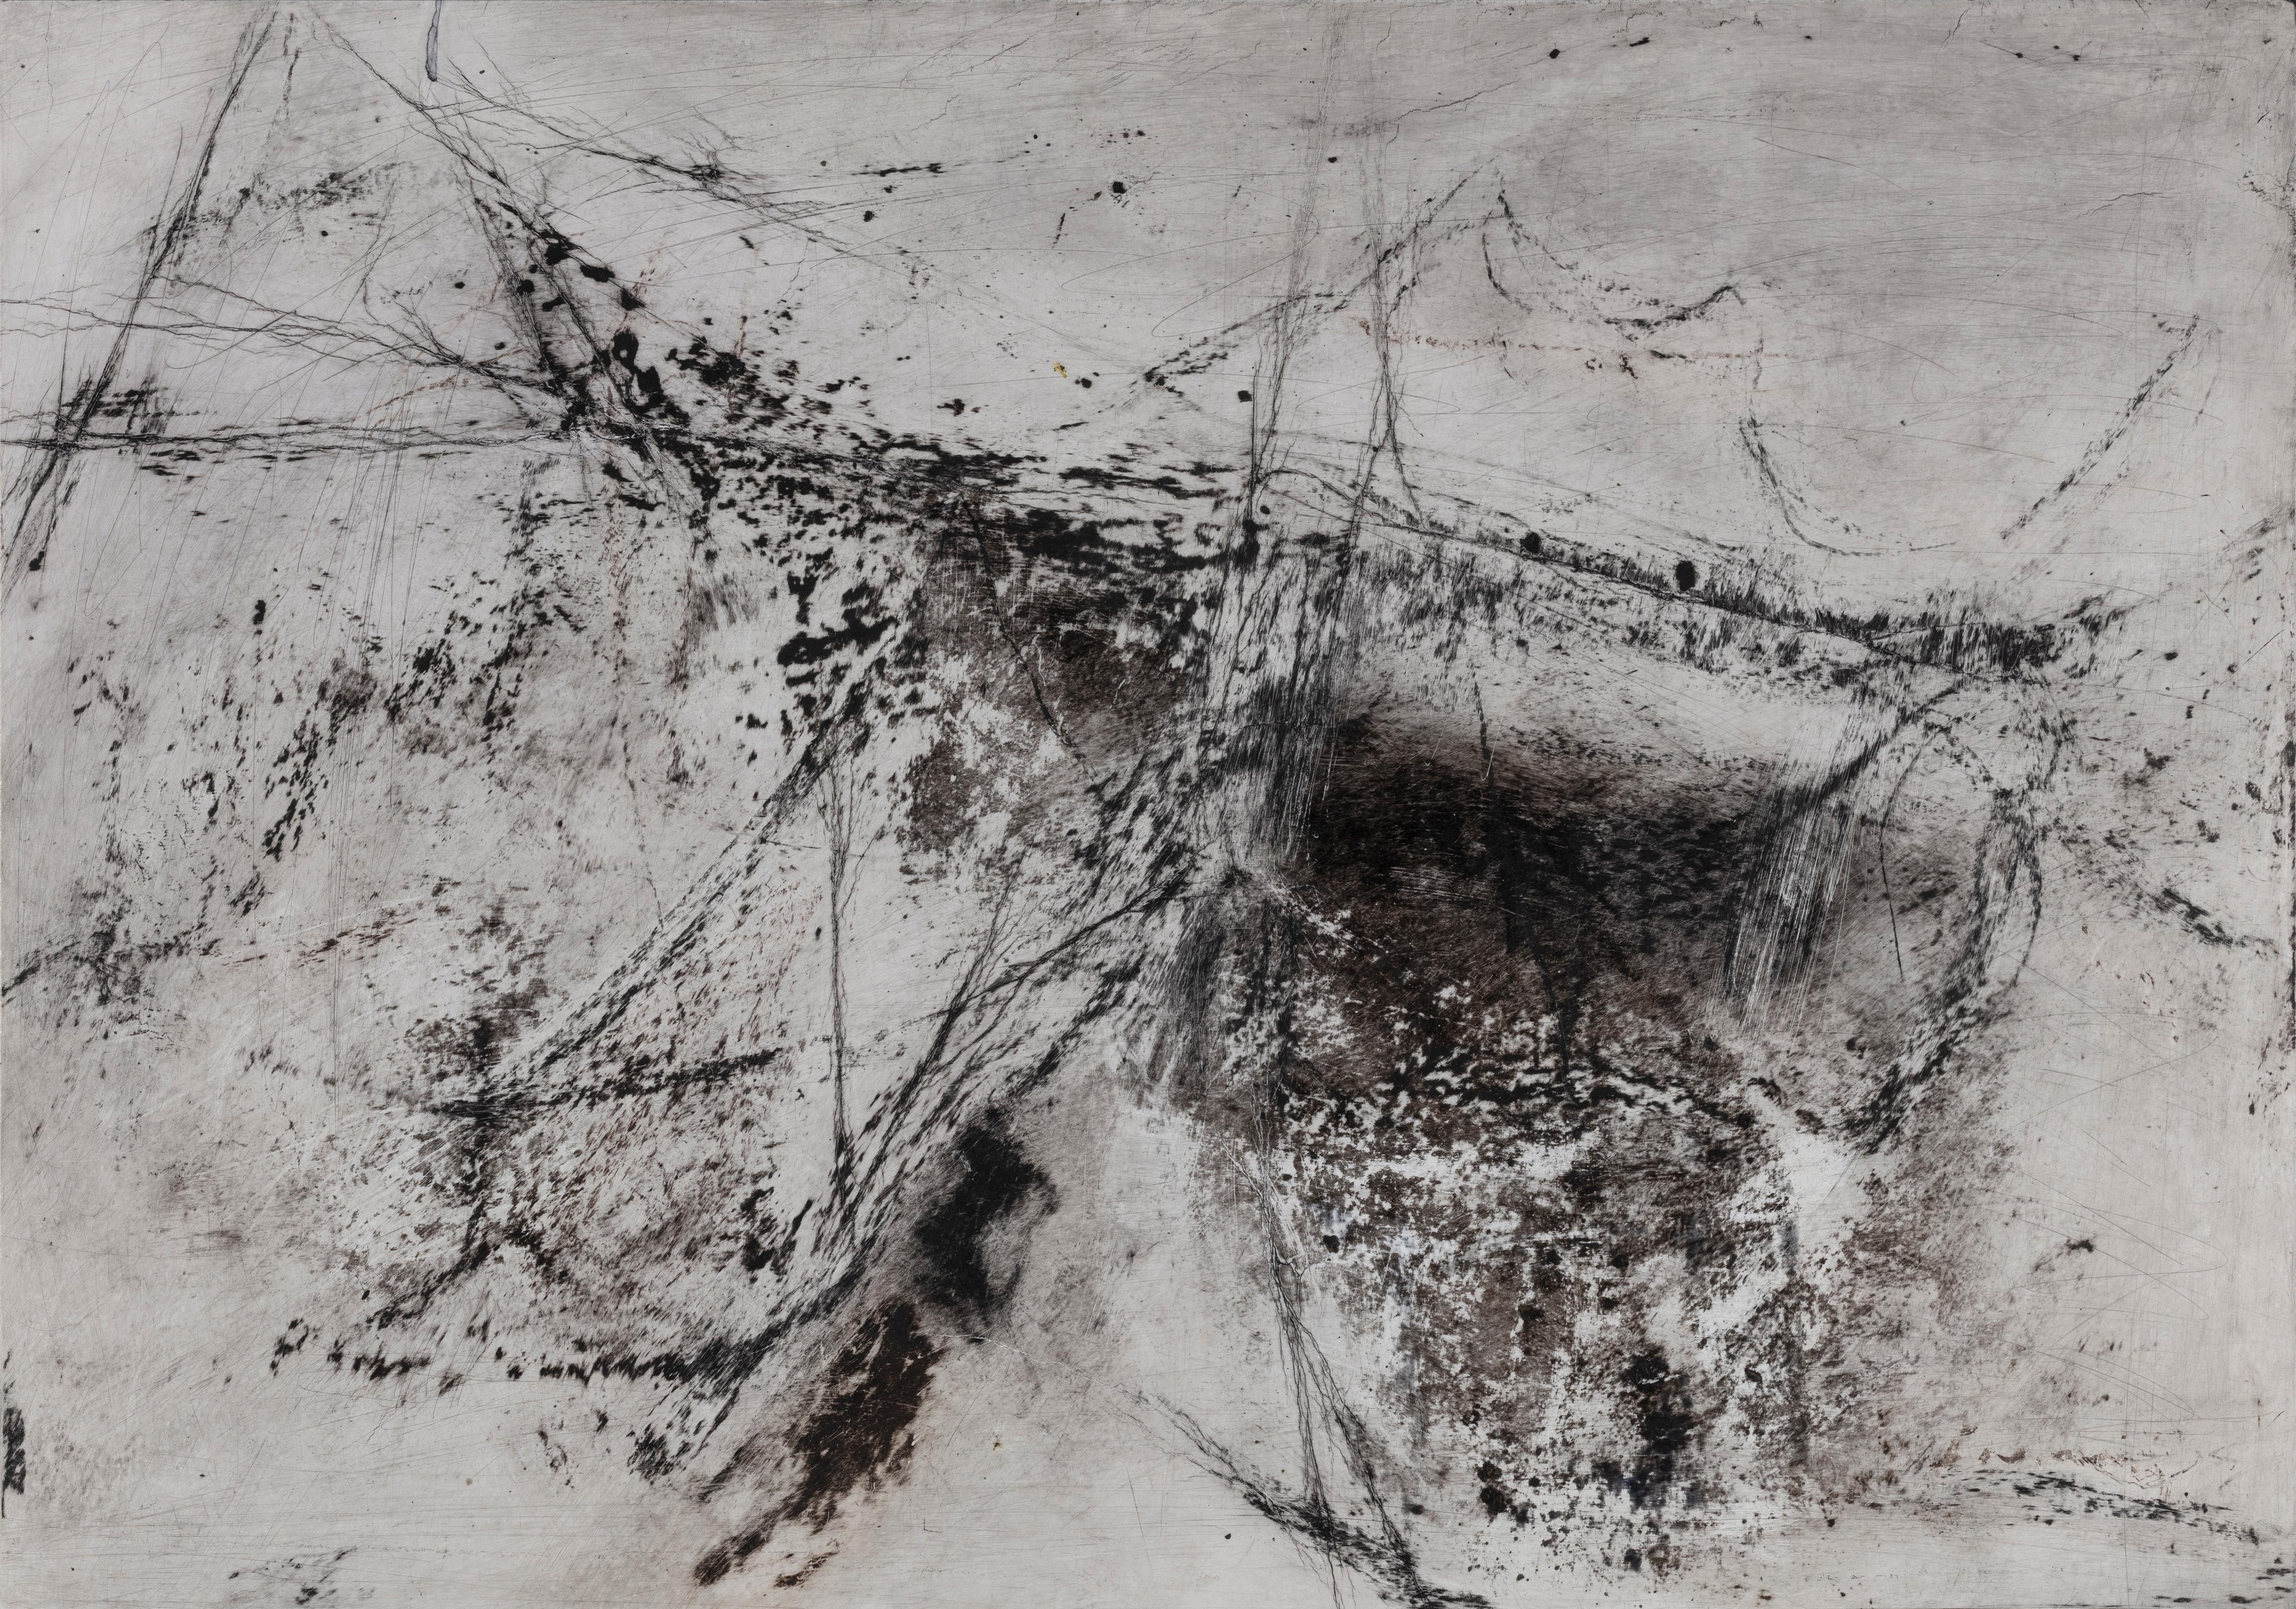 Öl auf Papier

Xia Fu-Ning ist ein chinesischer Künstler, der 1962 in Nanjing geboren wurde. In den 1980er Jahren war er Professor an der Fakultät für Bildende Künste der Polytechnischen Universität Tianjin. Derzeit lebt und arbeitet er in Song